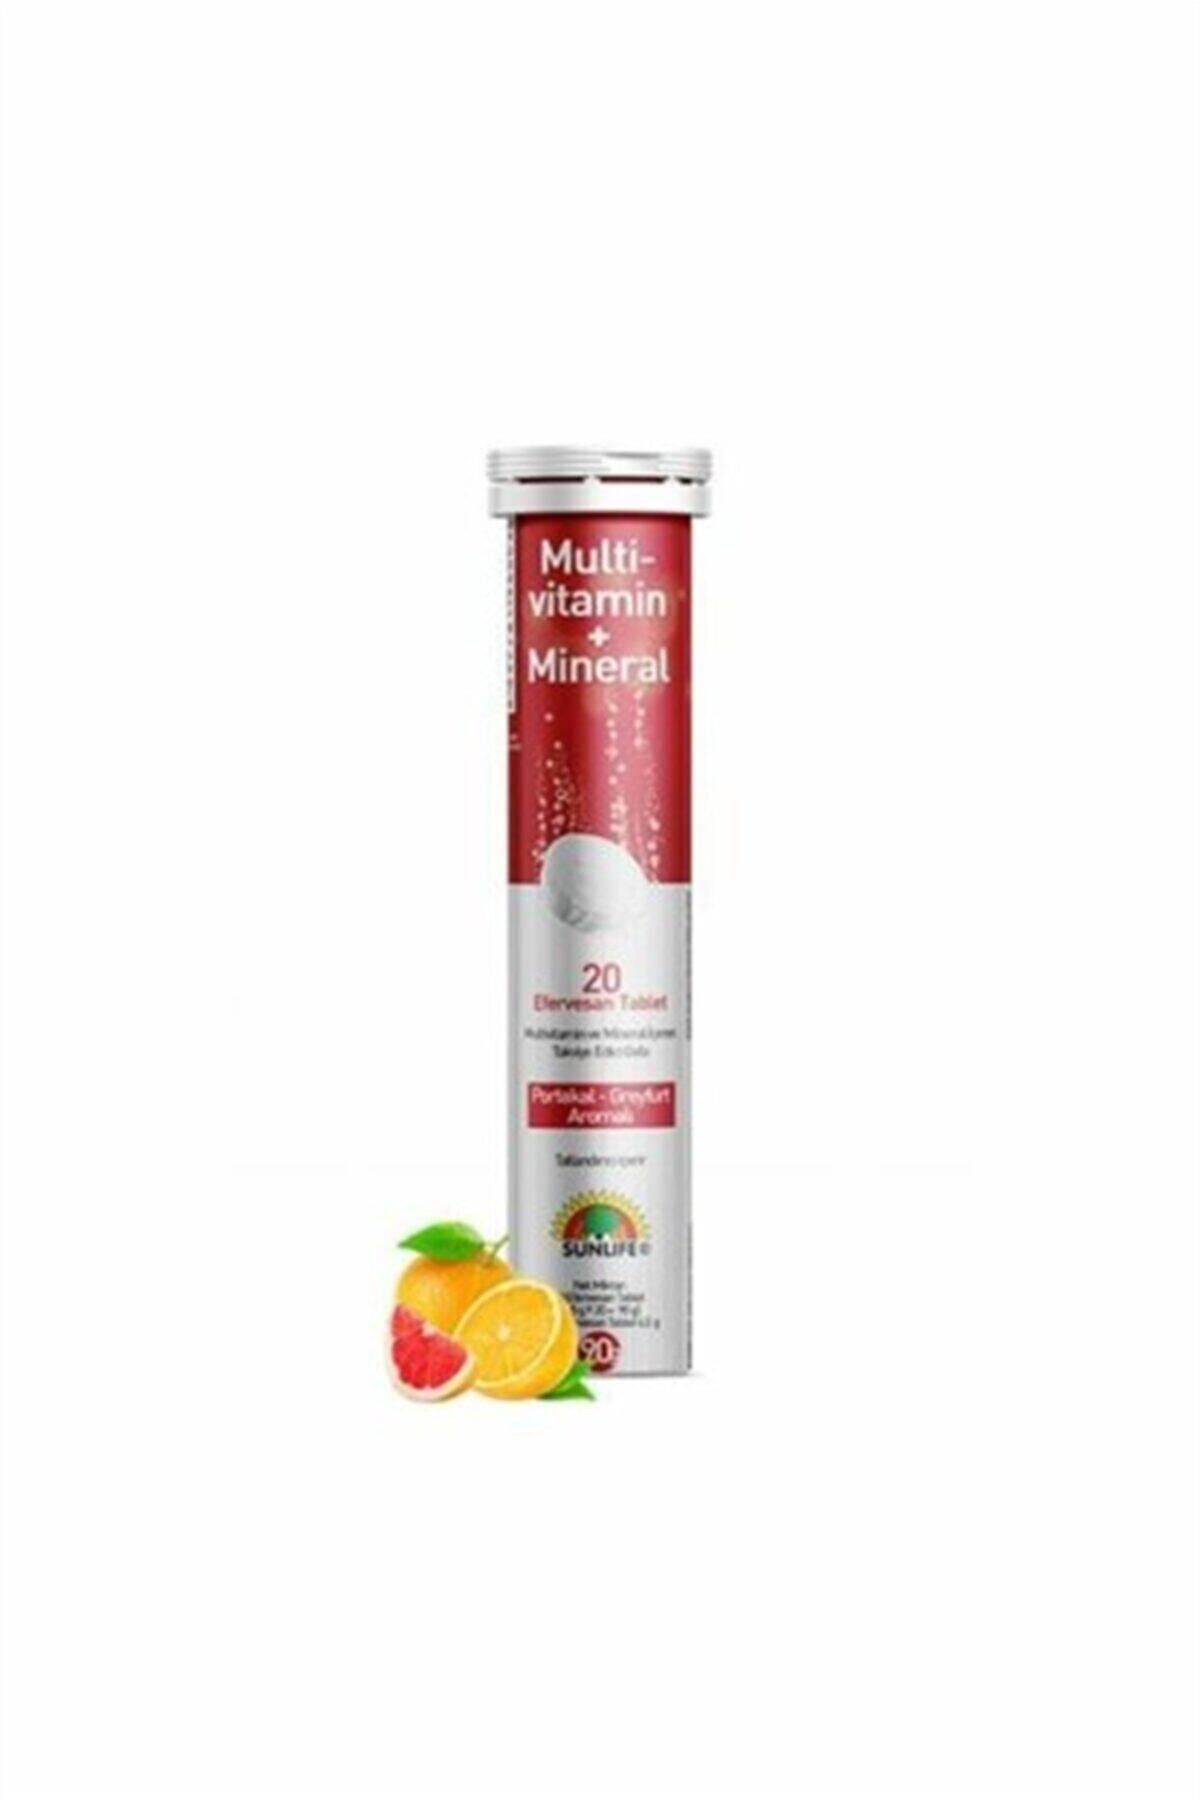 Sunlife Multi Vitamin Mineral 20 Tablet